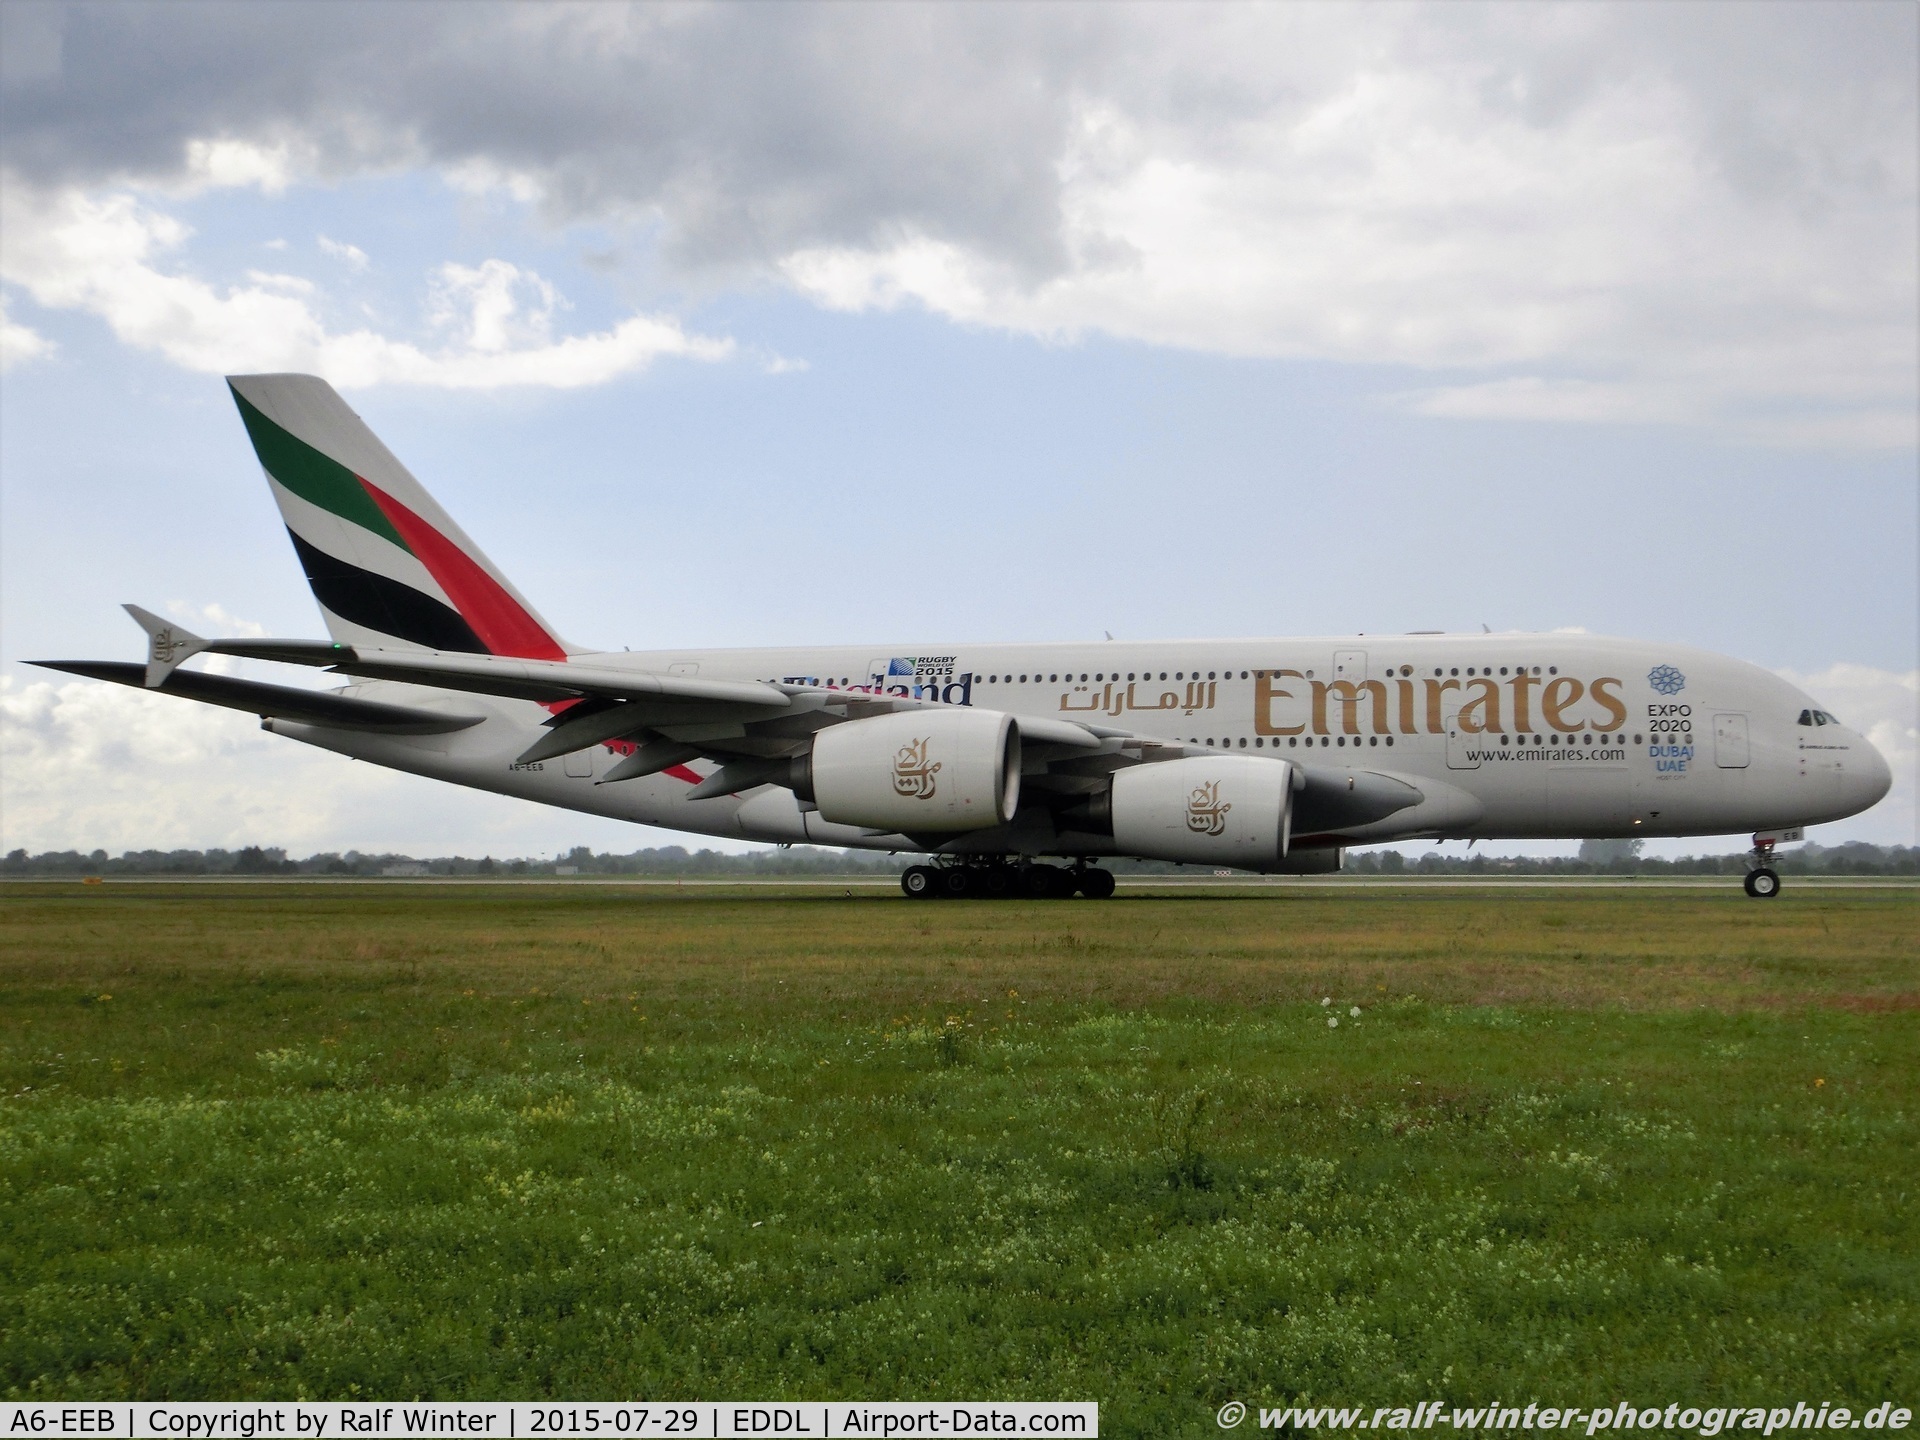 A6-EEB, 2012 Airbus A380-861 C/N 109, Airbus A380-861 - EK UAE Emirates 'Rugby World Cup 2015' - 109 - A6-EEB - 29.07.2015 - DUS